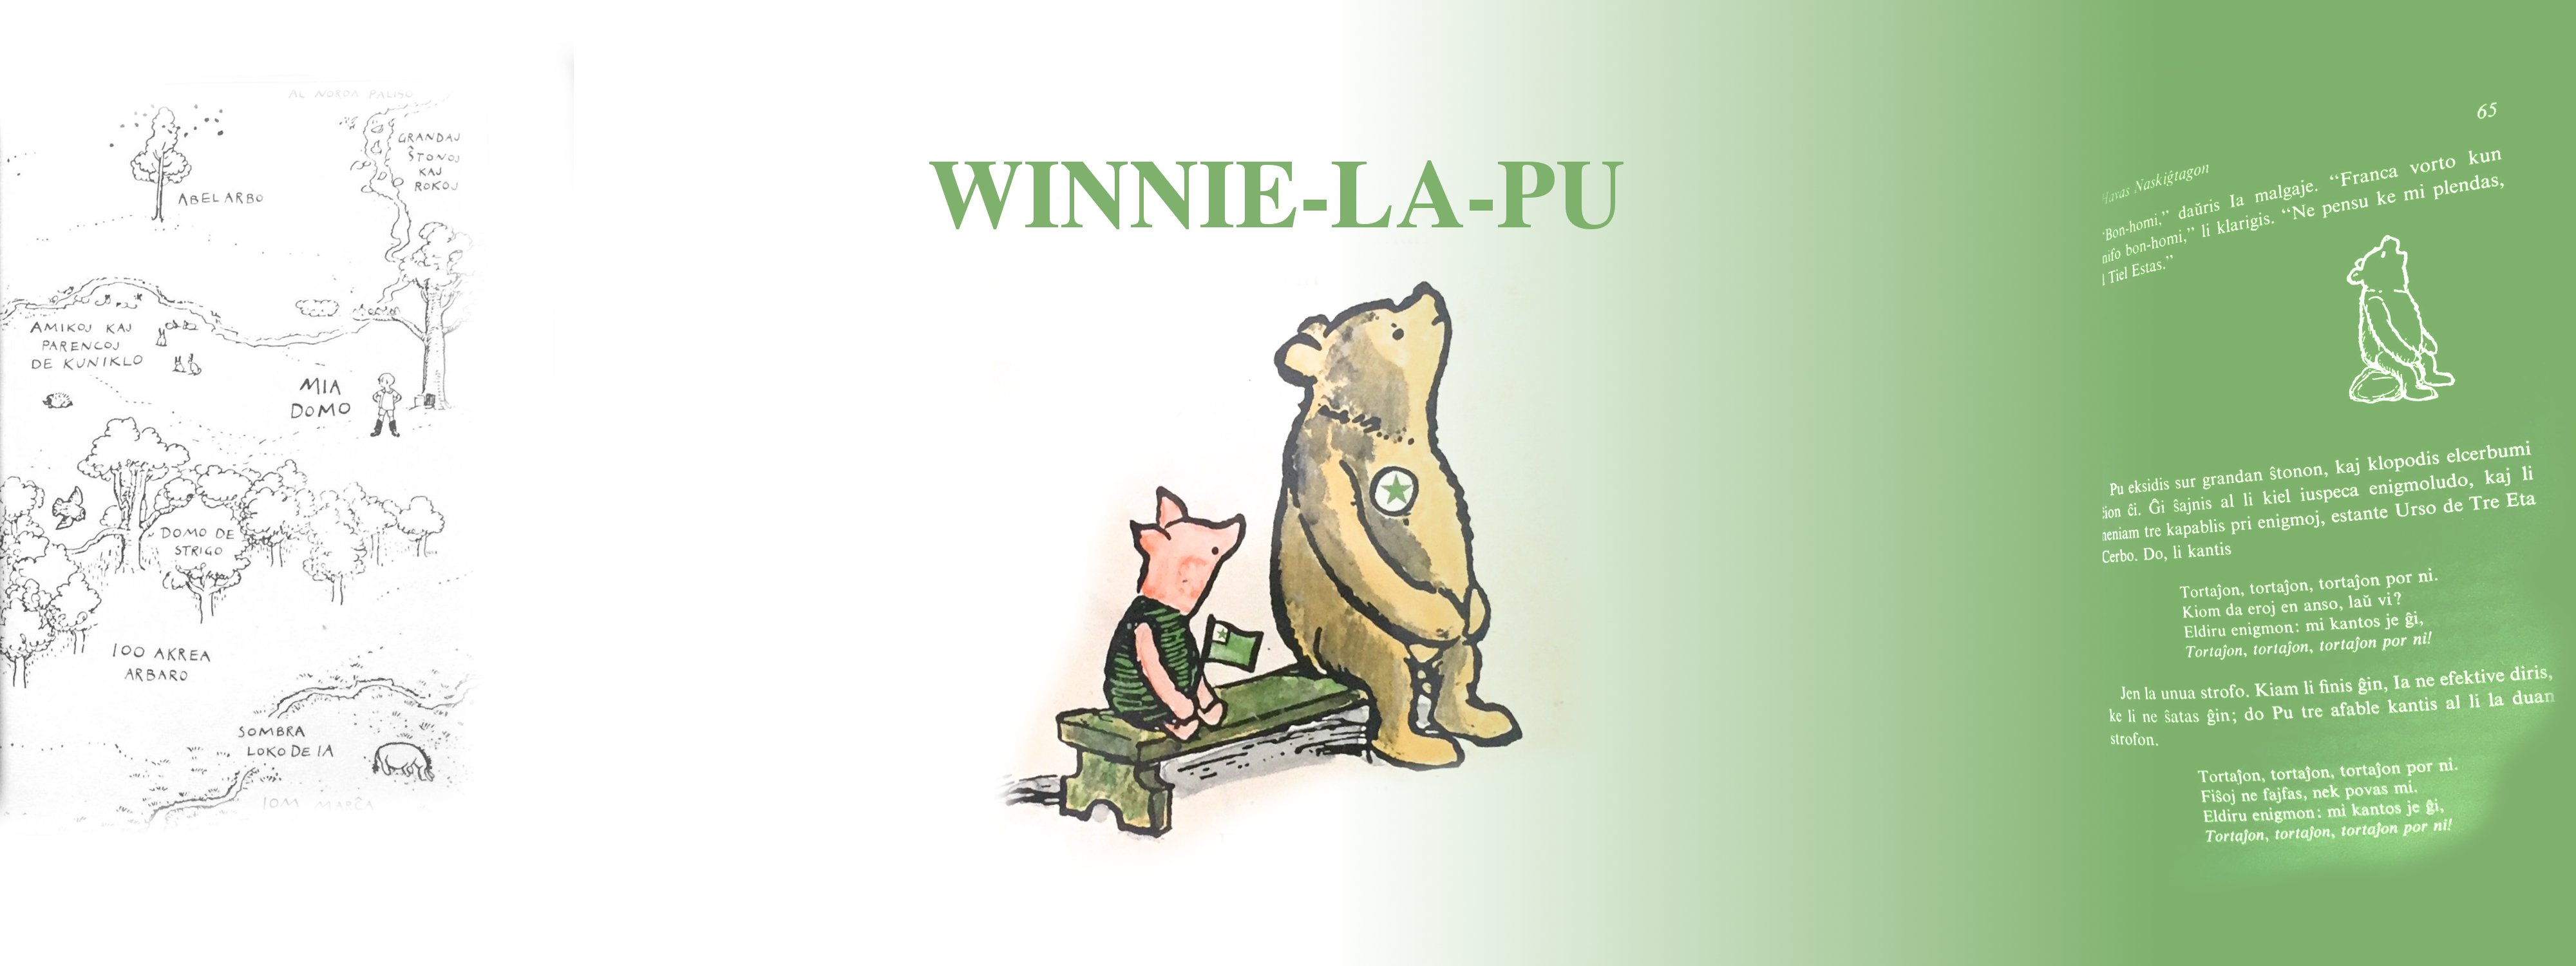 Pliaj informoj pri "Winnie-La-Pu"